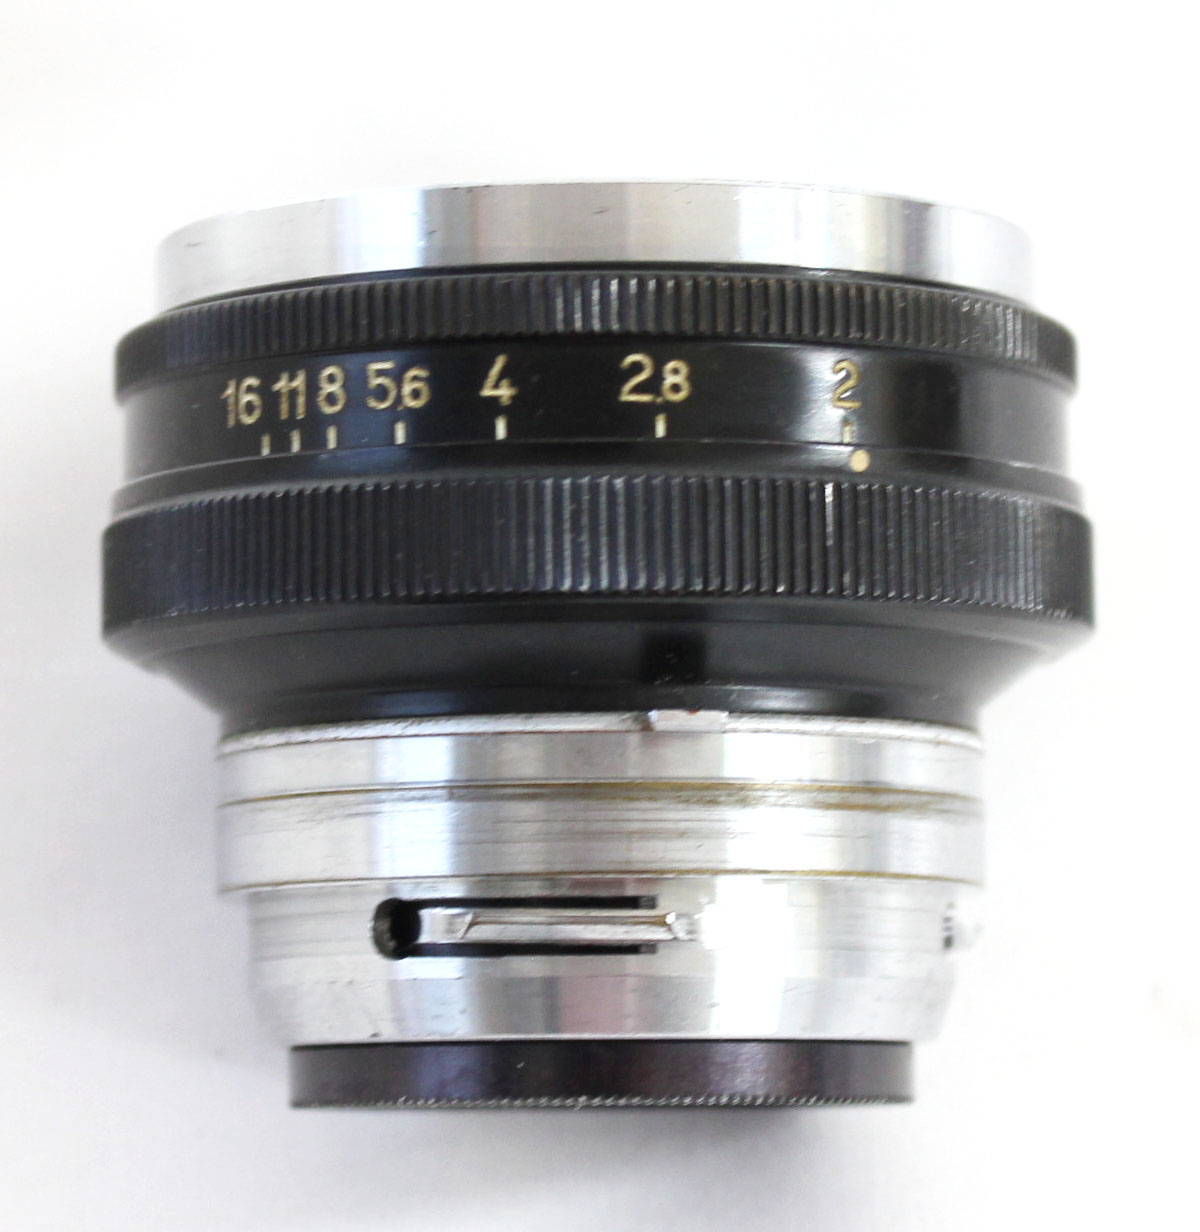  Nippon Kogaku Nikkor-H.C 5cm 50mm F/2 Lens for Nikon S Mount from Japan Photo 4